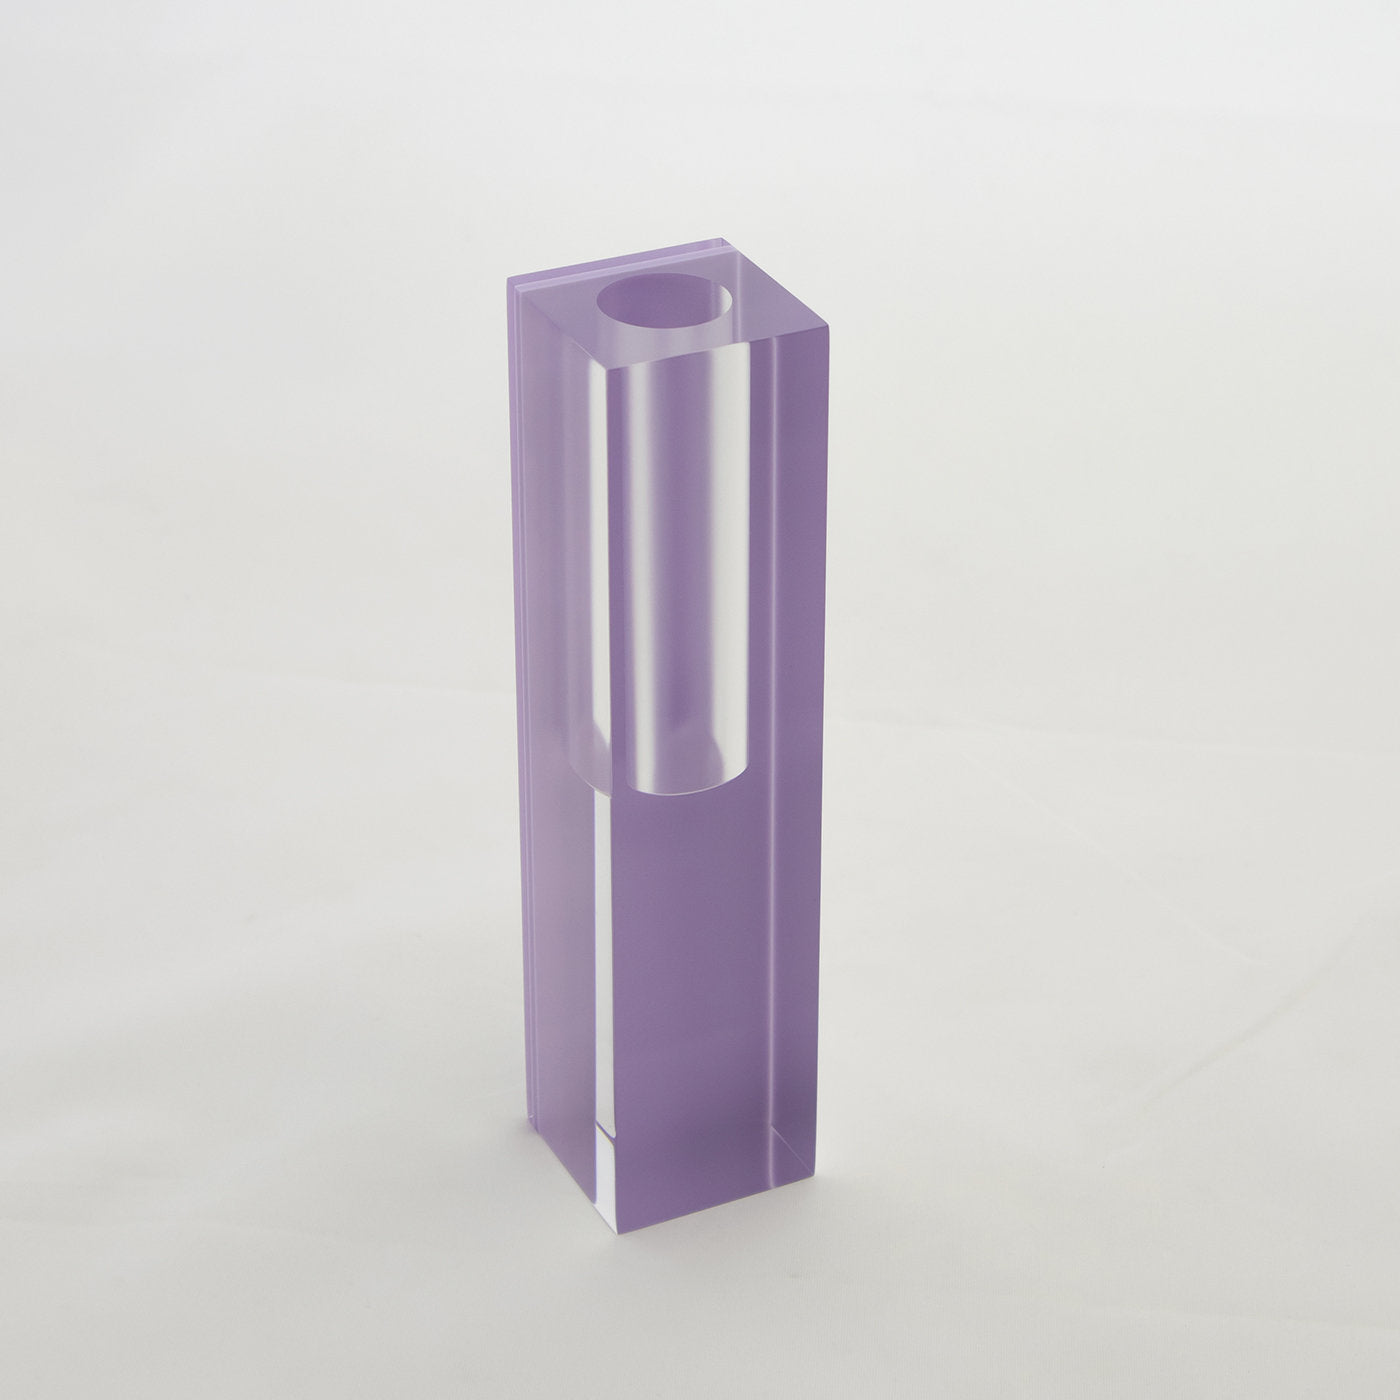 Presto V Vase Purple - Alternative view 1